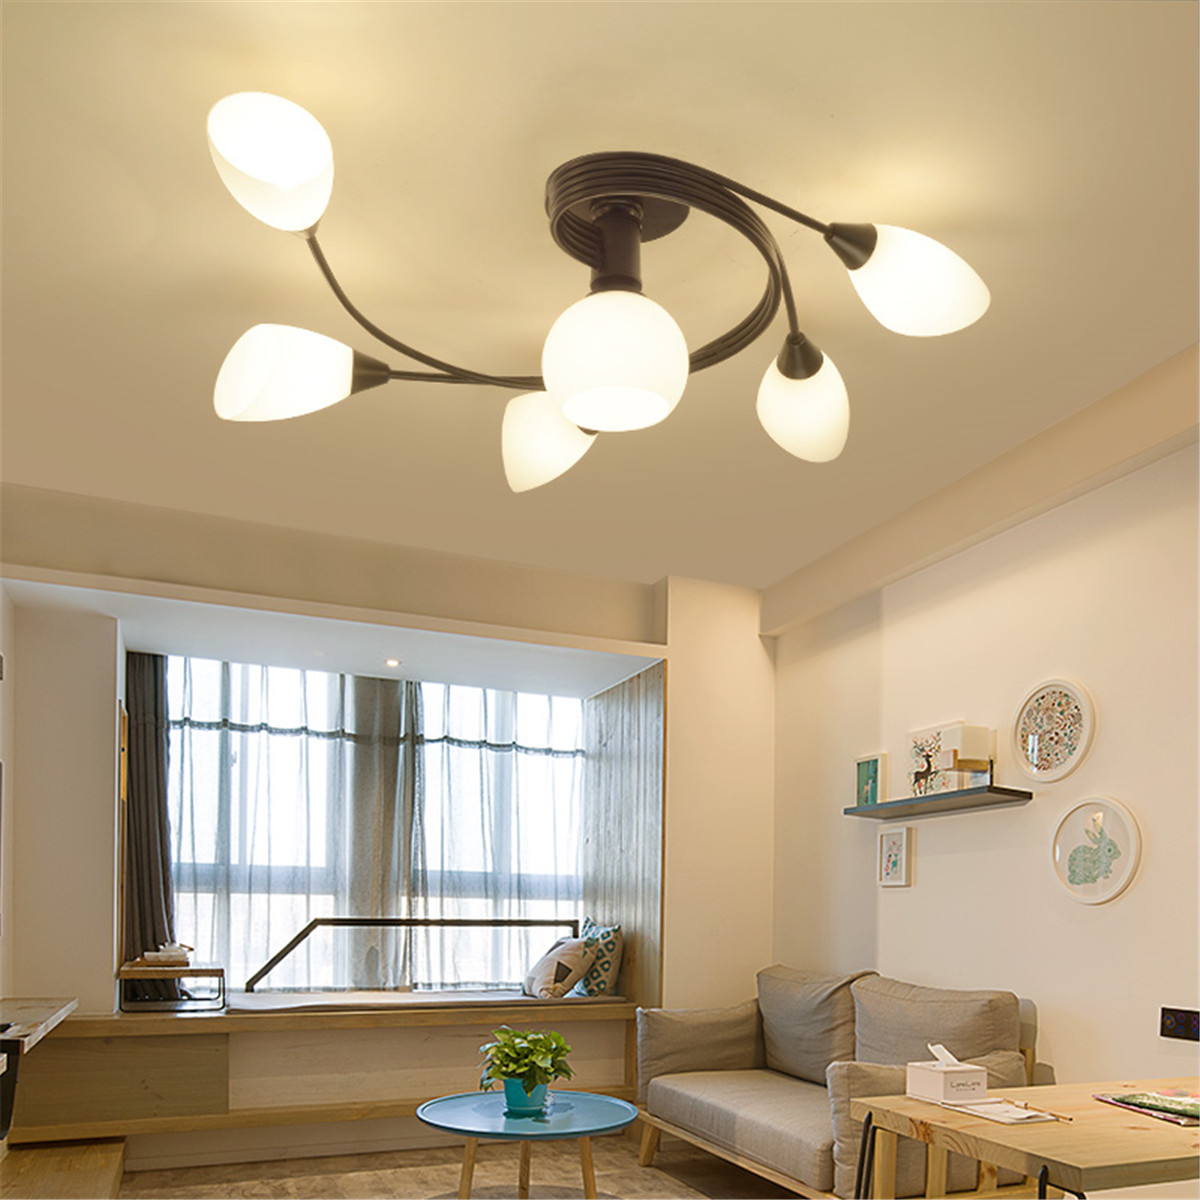 Modern-Ceiling-Light-Home-Bedroom-Pendant-Chandeliers-Lamp-Lighting-Fixture-1604532-1